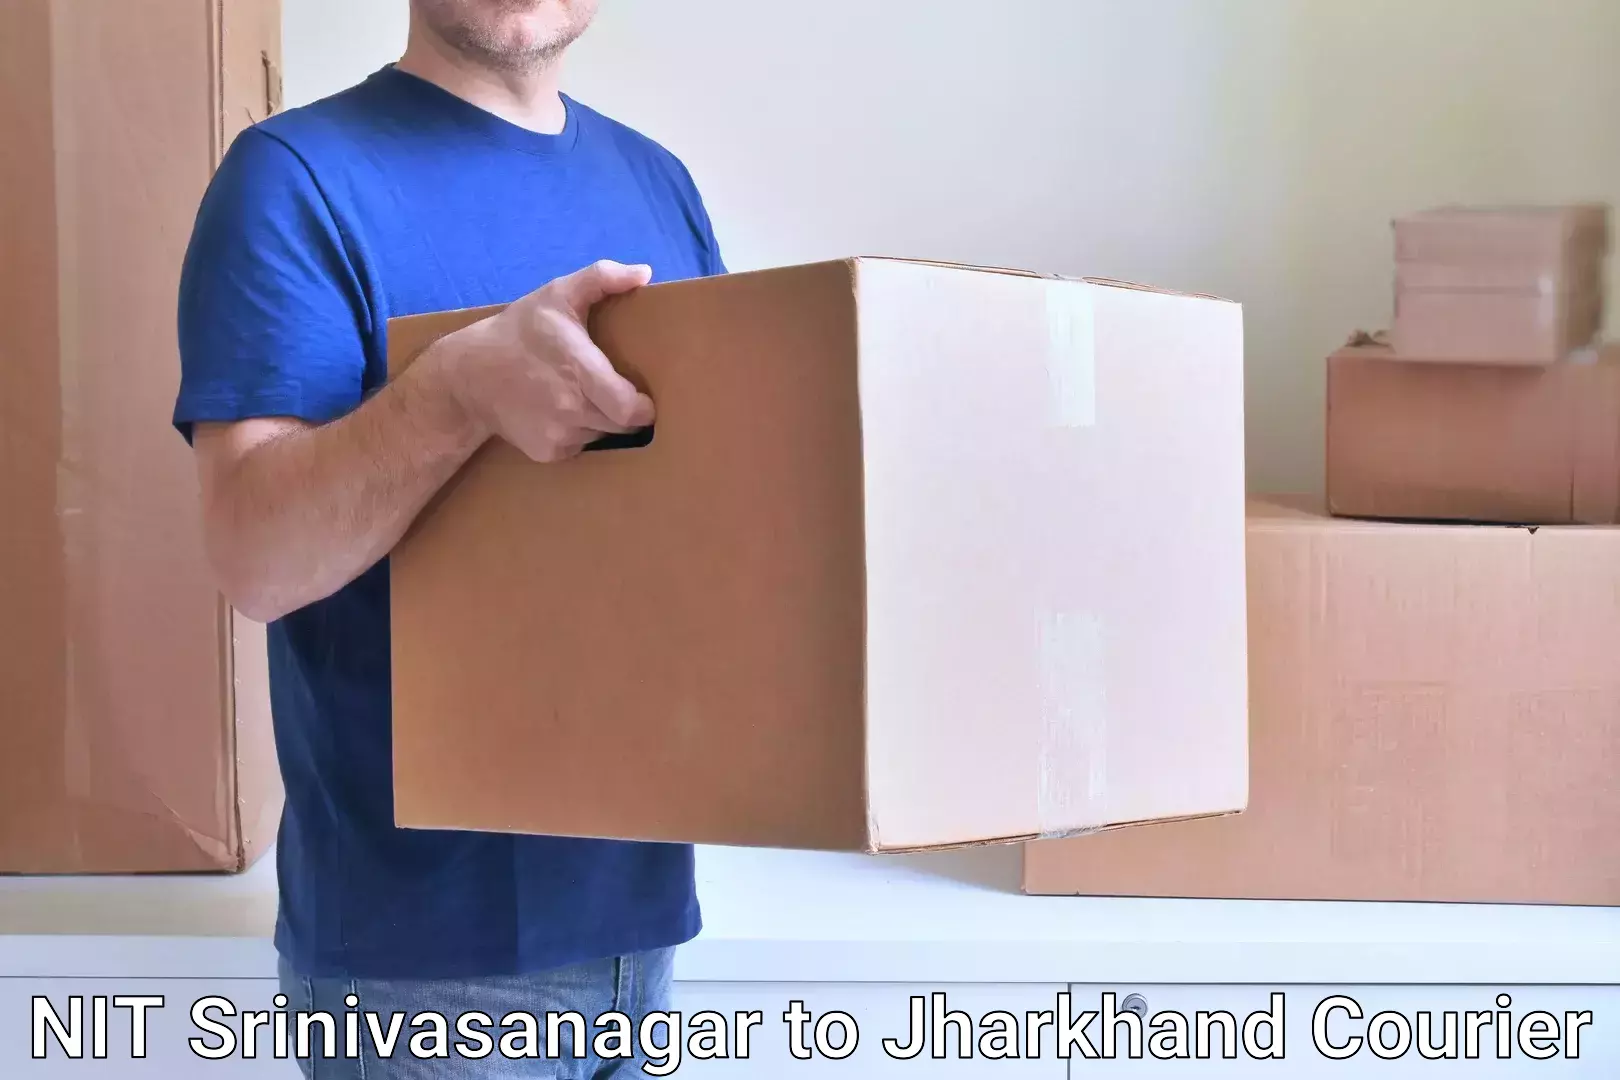 Modern delivery methods in NIT Srinivasanagar to Domchanch